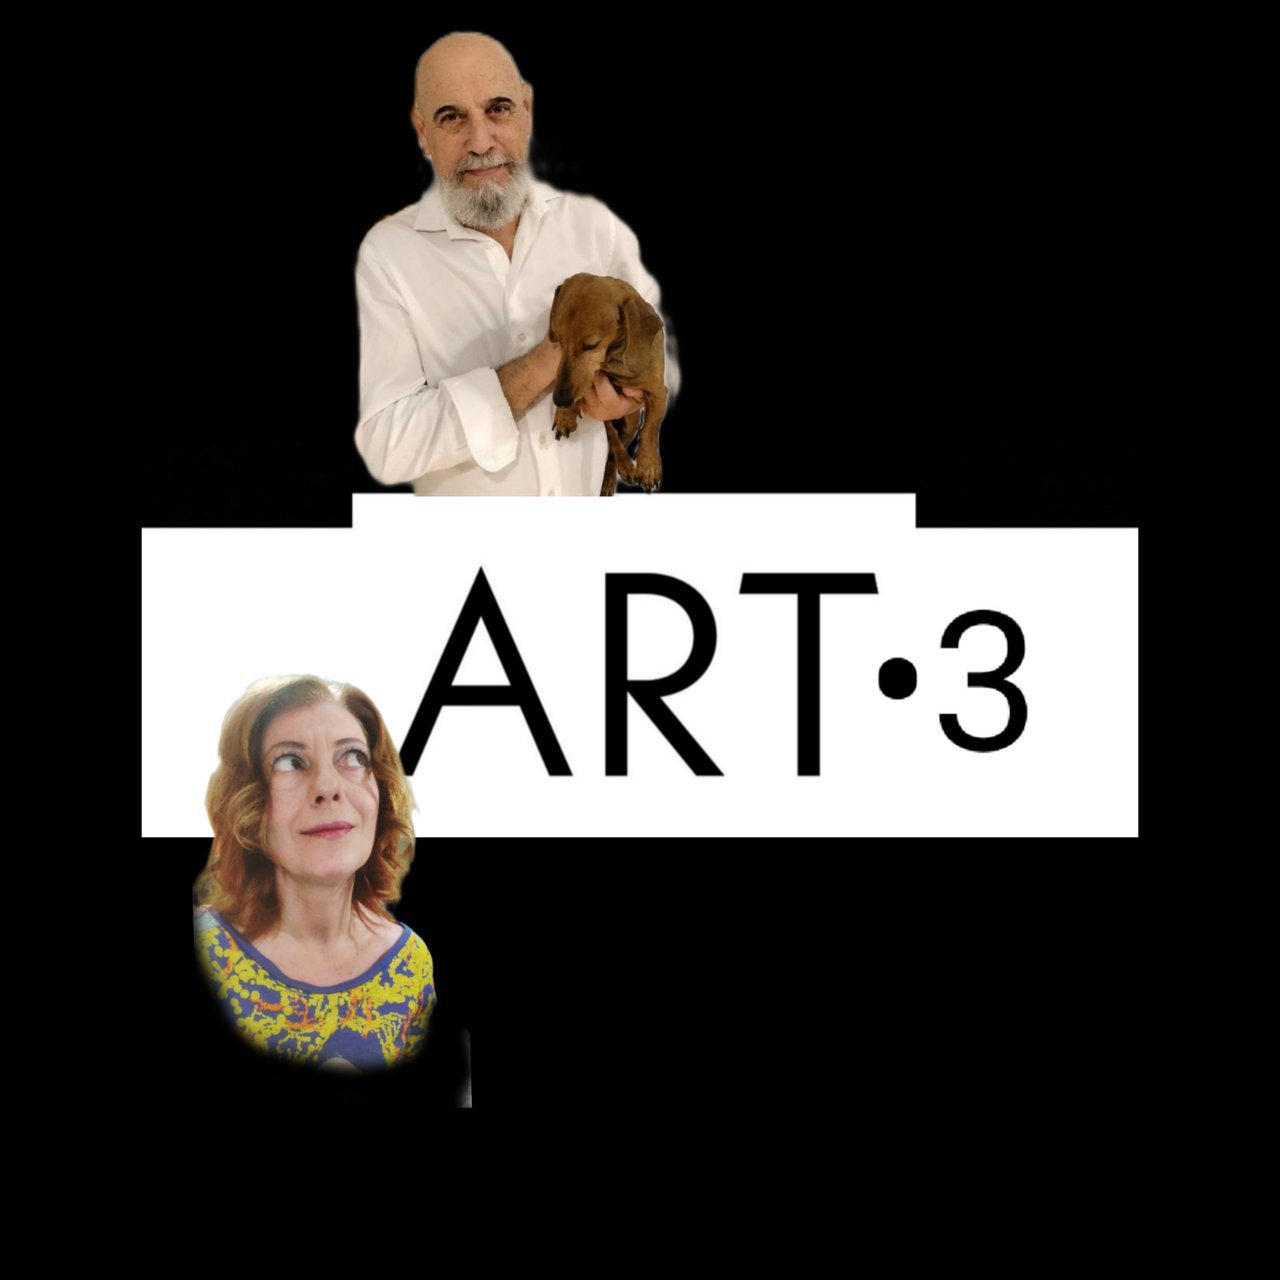 Art·3 Podcast sobre arte, investigación y nuevas tecnologías/ Art·3 Podcast on art, research and new